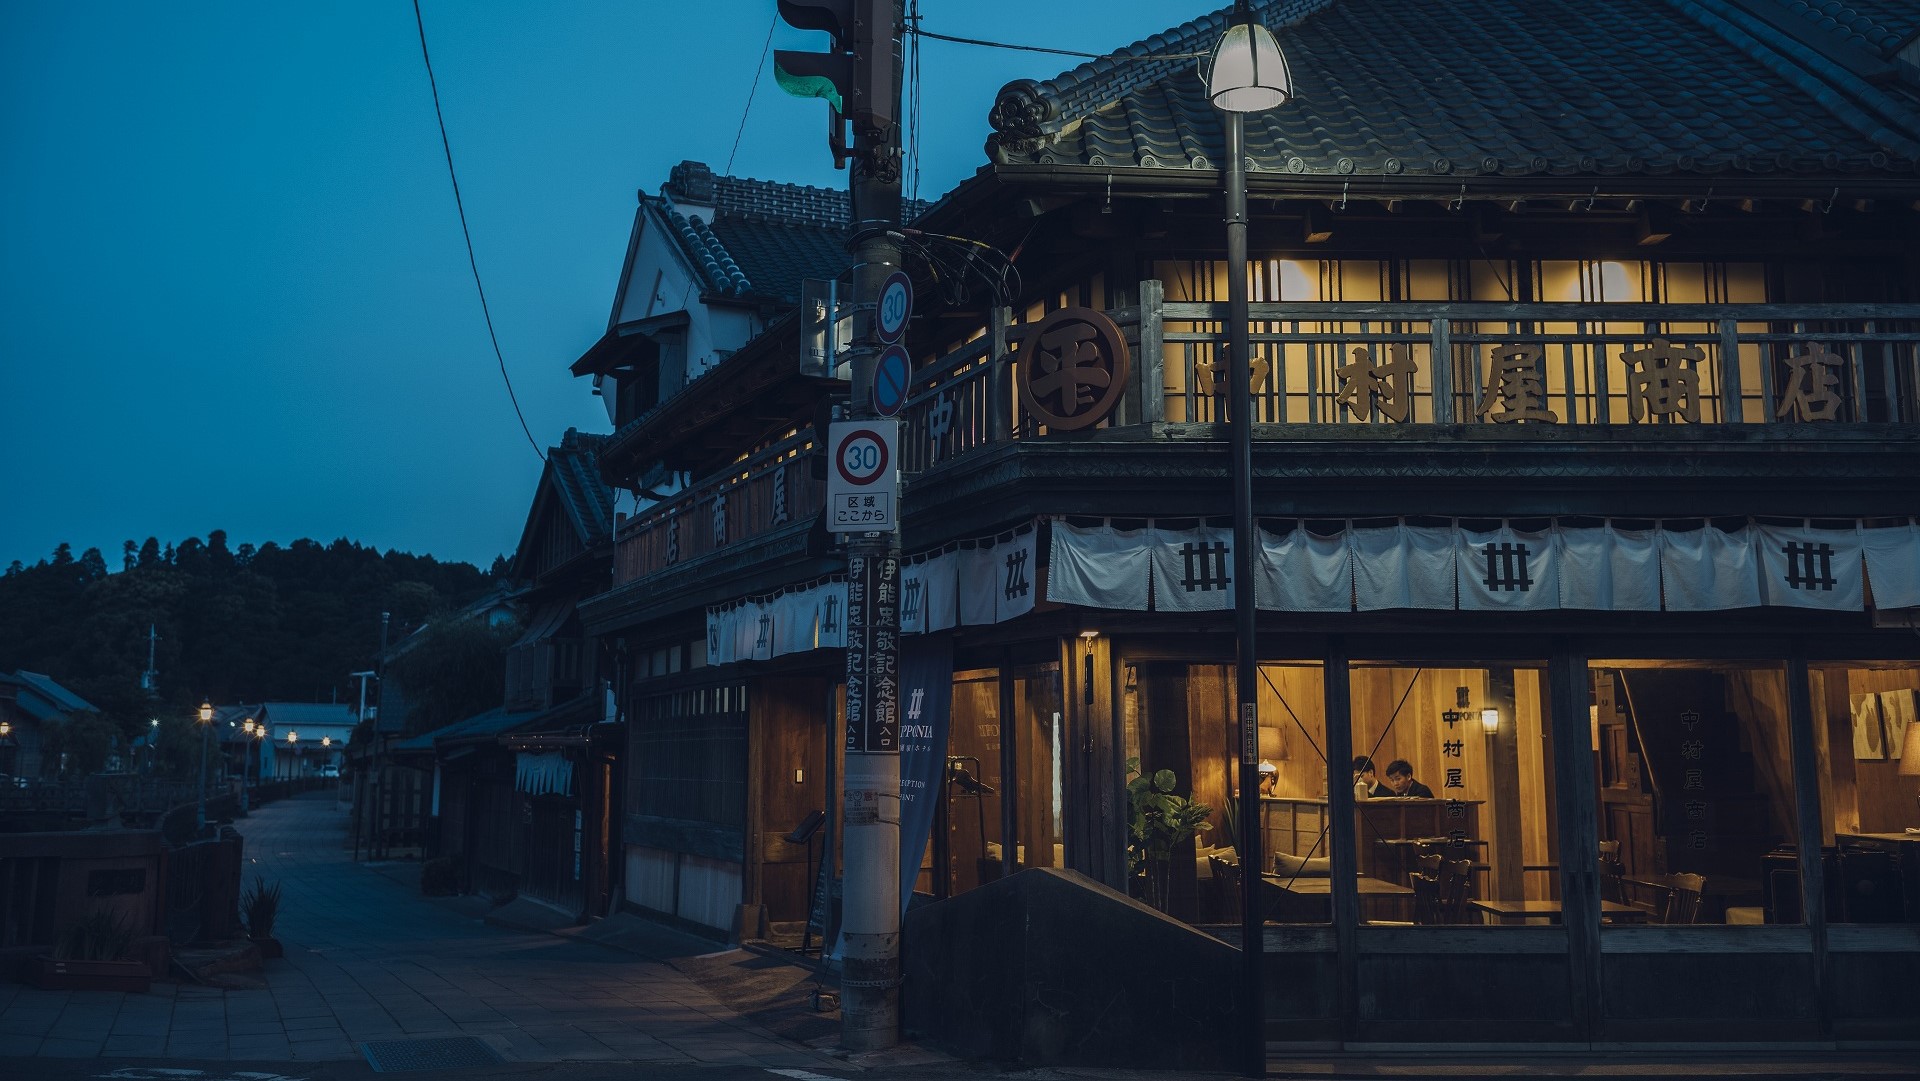 【外観】江戸時代から続くまち並みの中で、古い建物が今も生き続けています。